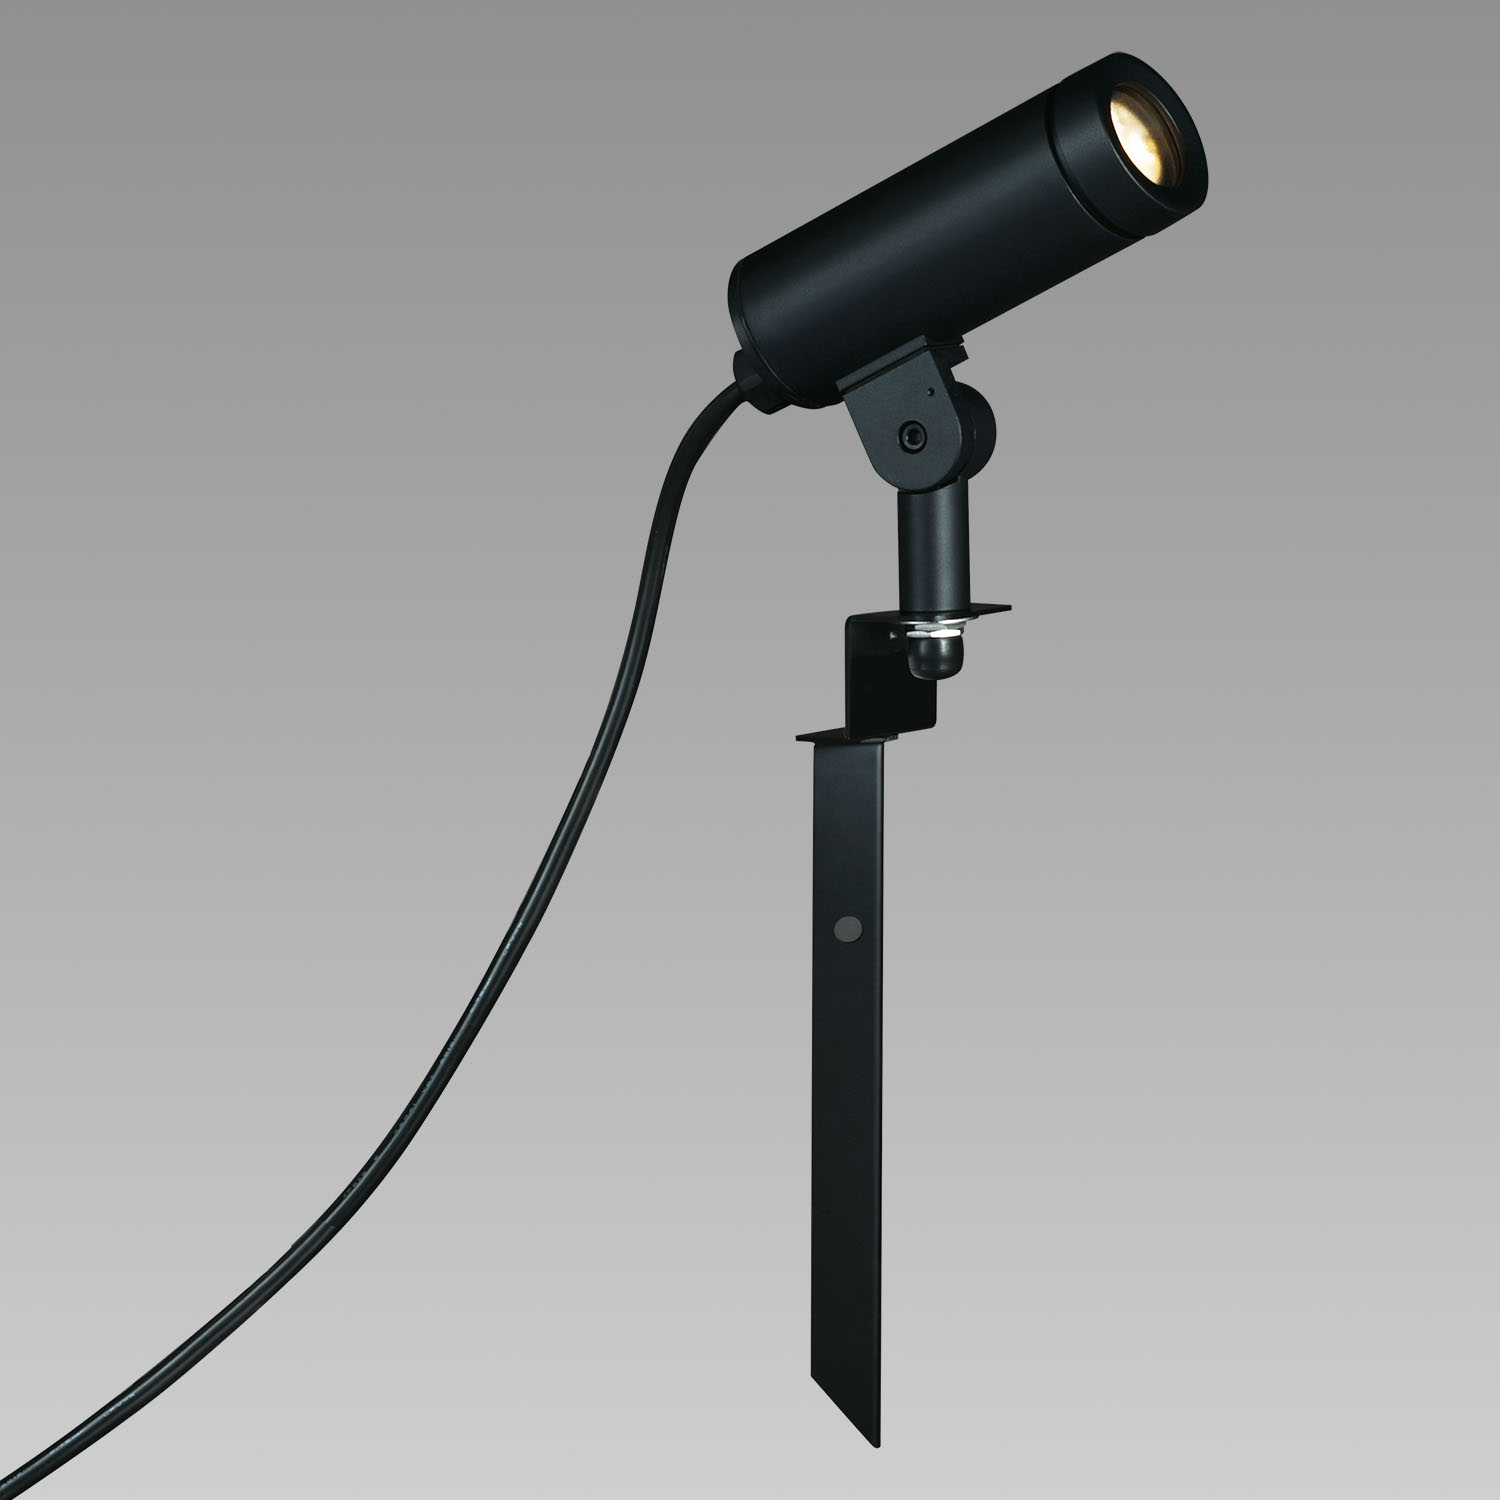 山田照明 山田照明 Compact Spot Neo（コンパクト・スポット・ネオ） 屋外用スポットライト 黒色 LED 電球色 調光 64度 AD- 3147-L